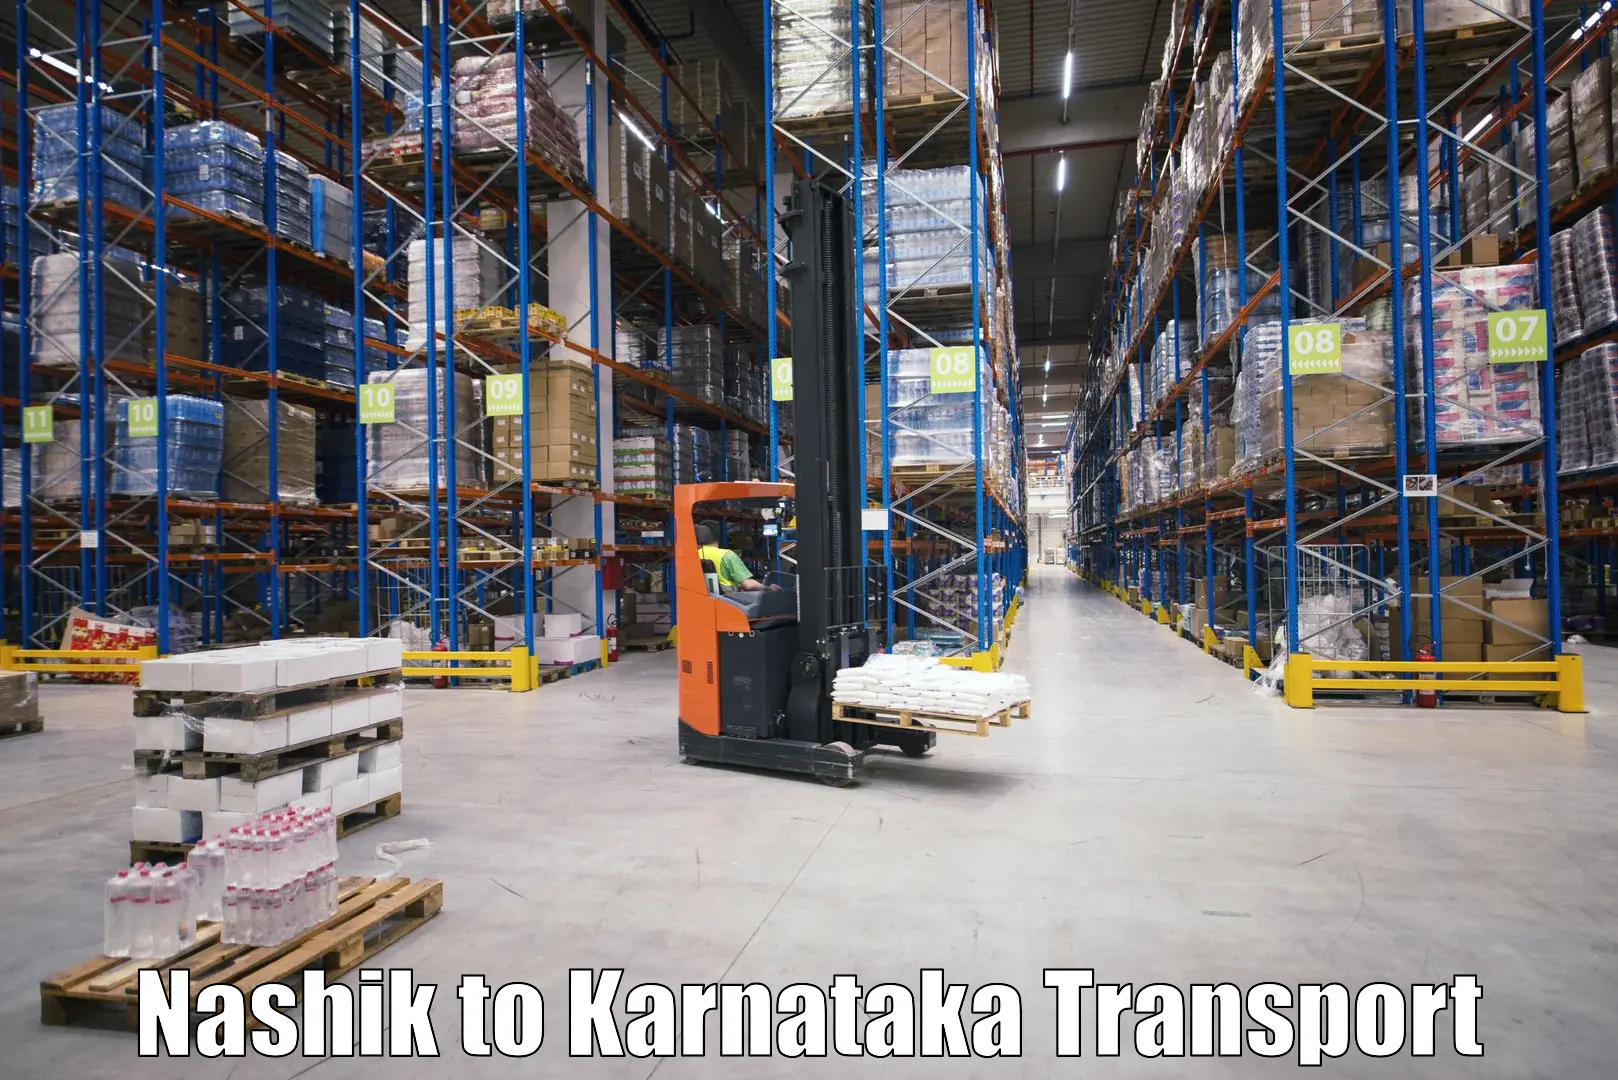 Interstate transport services Nashik to Karnataka